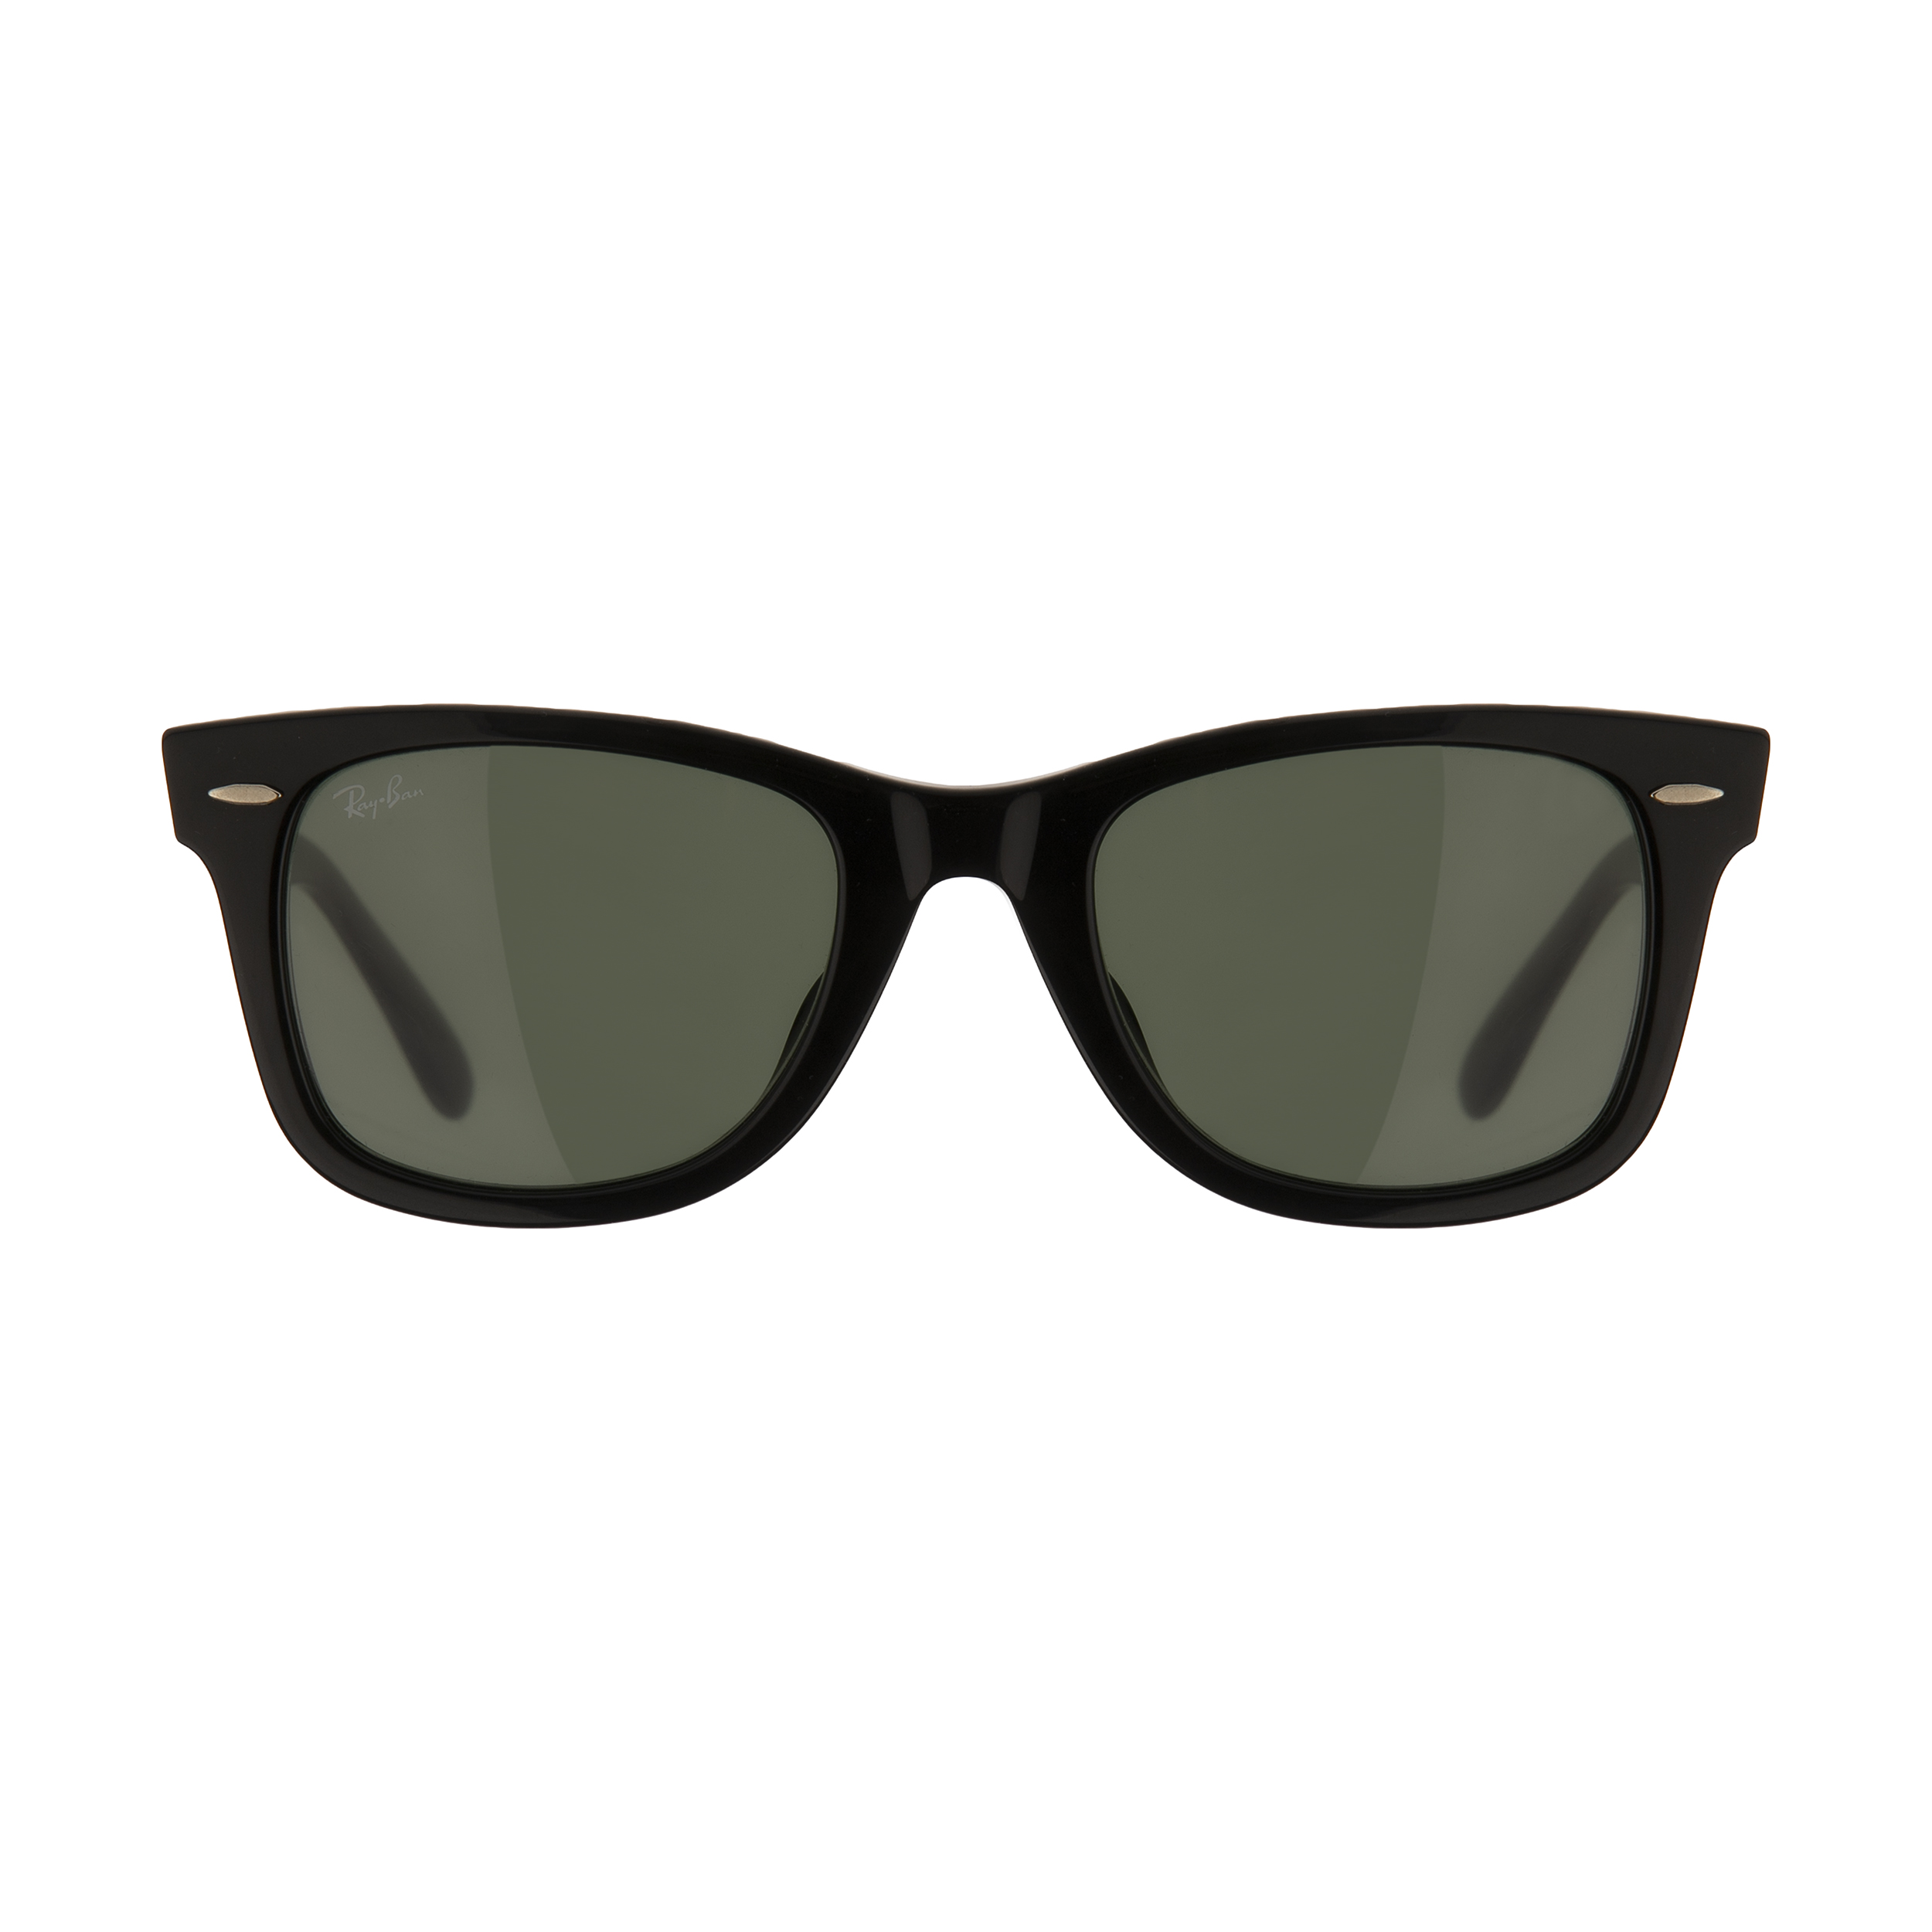 عینک آفتابی ری بن مدل 2140f-901-52 -  - 1